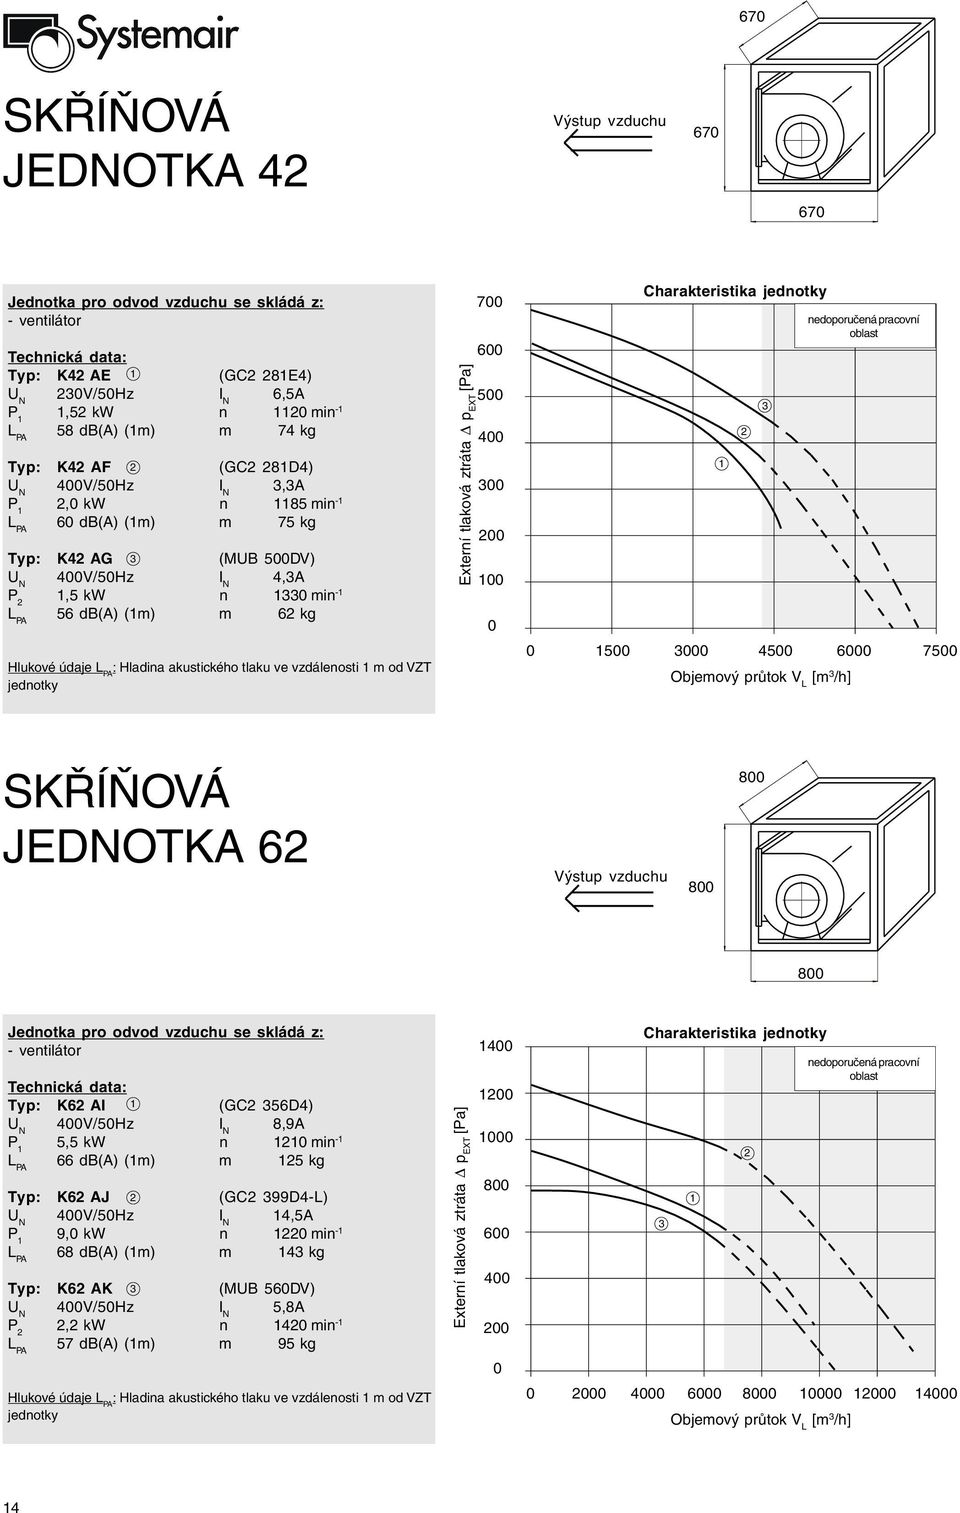 SKŘÍŇOVÁ JEDNOTKA 6 8 8 8 Jednotka pro odvod vzduchu se skládá z: Typ: K6 AI (GC 56D4) 4V/5Hz I N 8,9A 5,5 kw n min - 66 db(a) (m) m 5 kg Typ: K6 AJ (GC